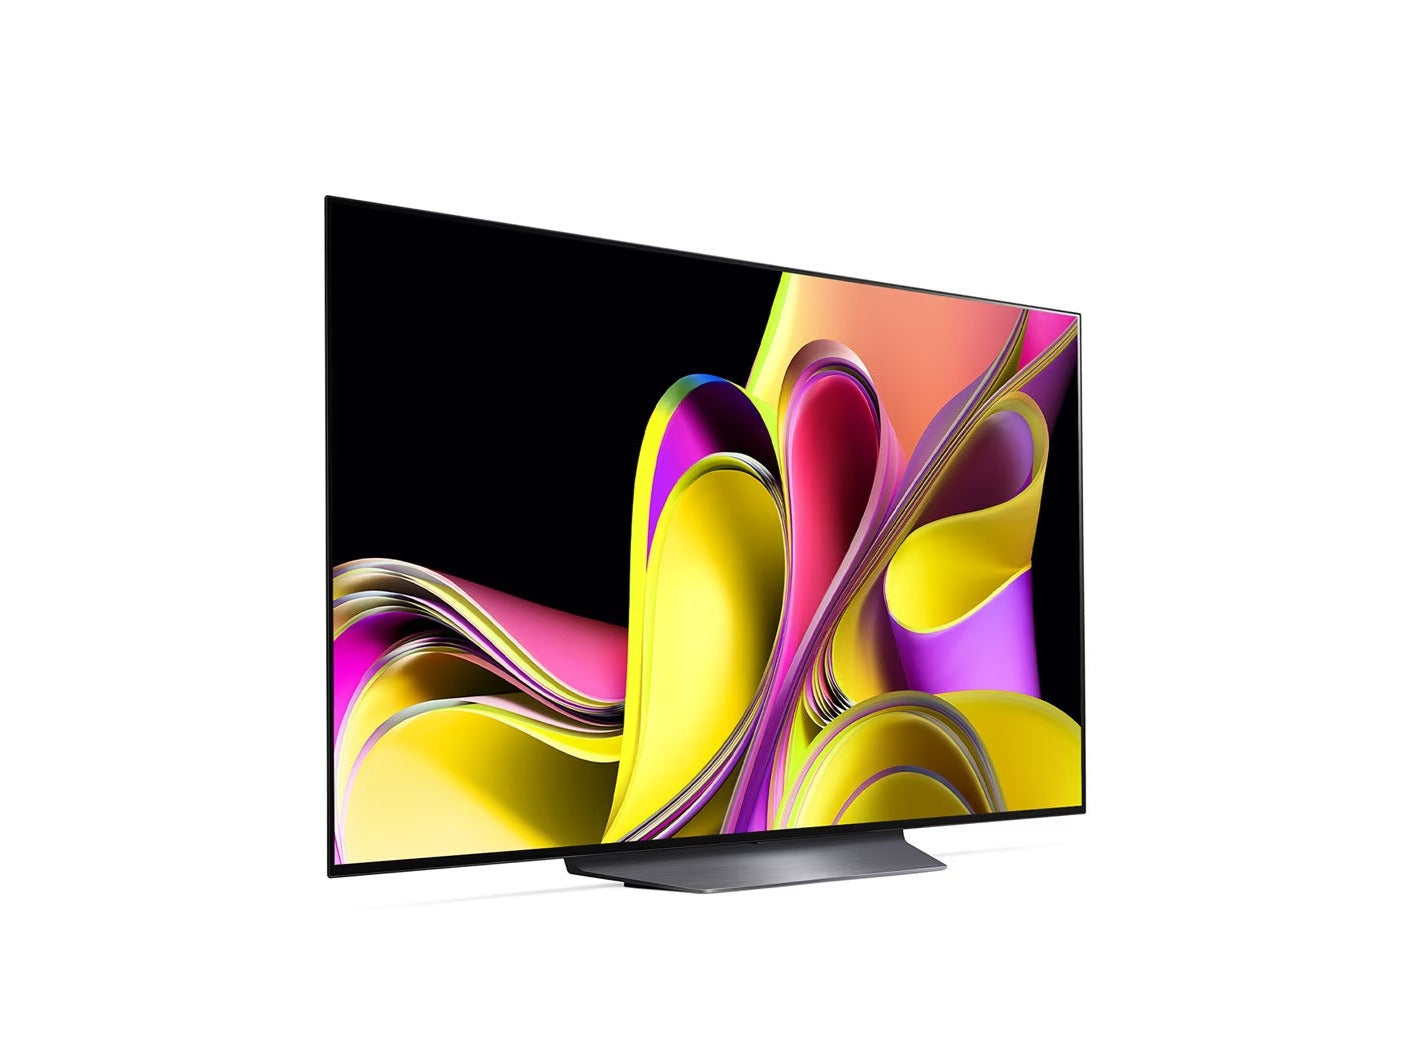 Az LG 55B3 oled evo televízió talpon, enyhén jobbra fodítva lilás sárga árnyalatú absztrakt ábra a kijelzőn.